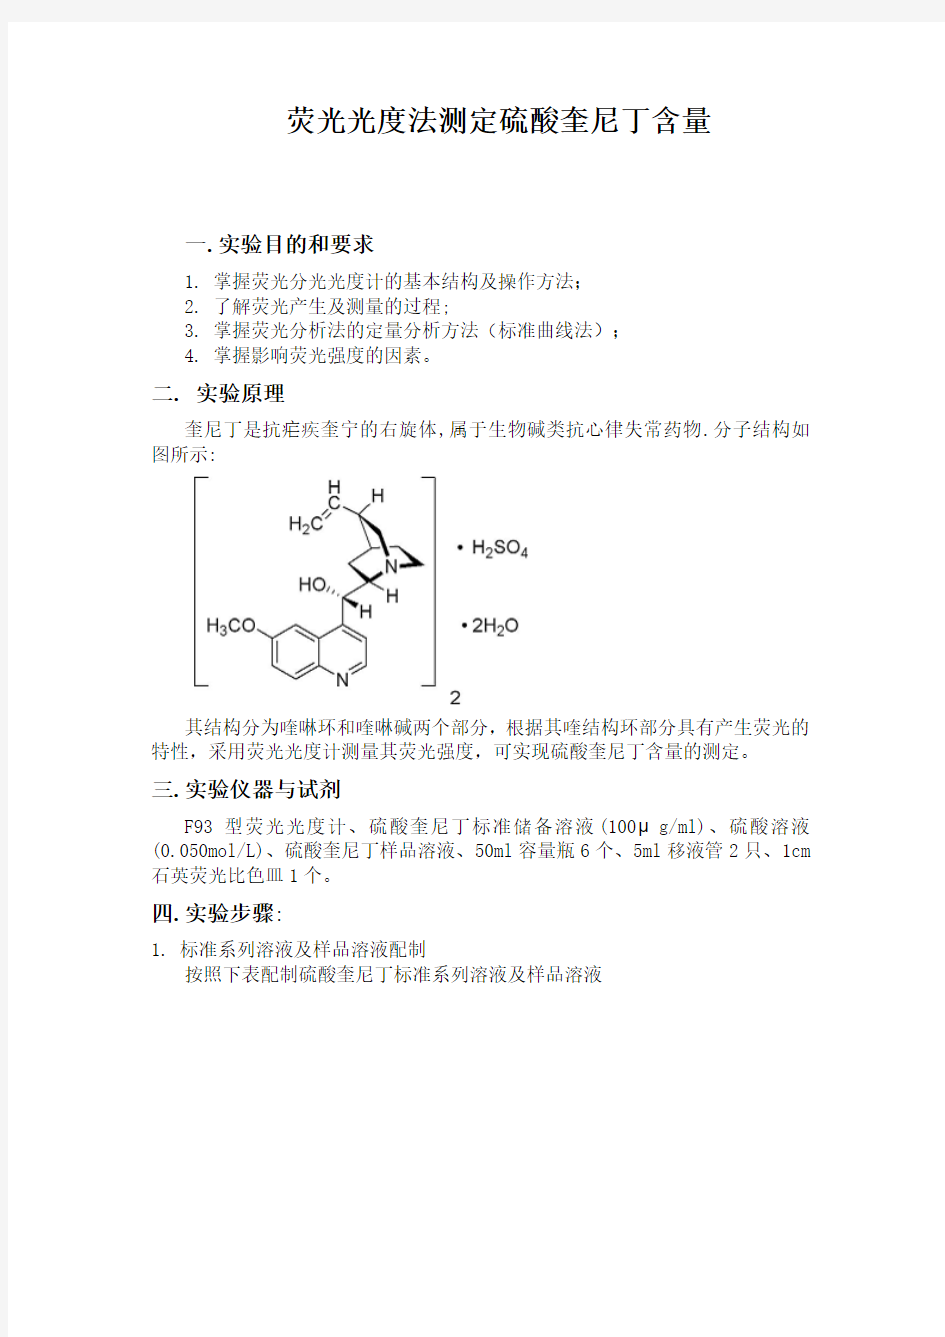 荧光光度法测定硫酸奎尼丁含量